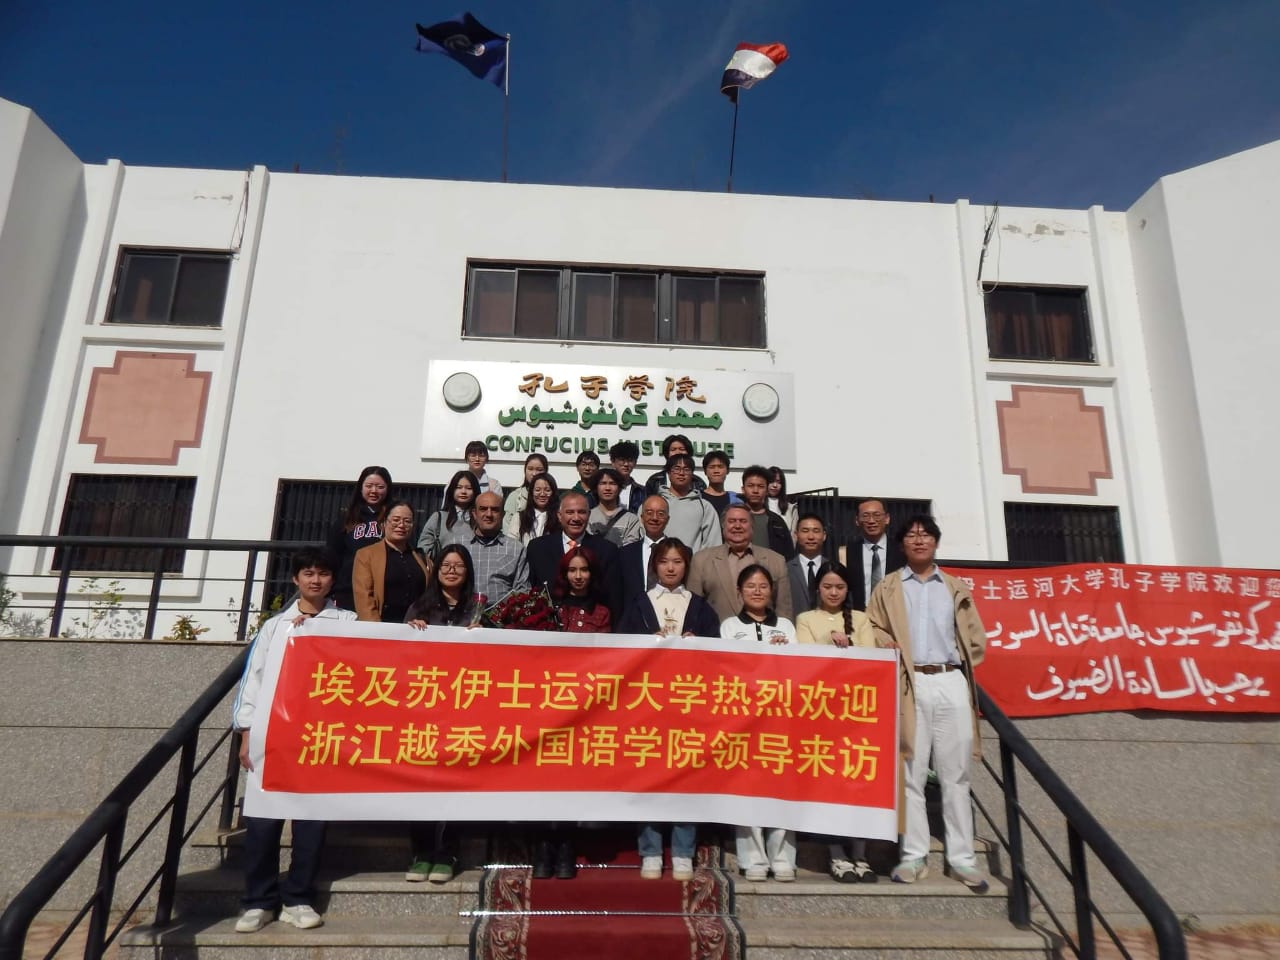 الطلاب الصينيين أمام المعهد